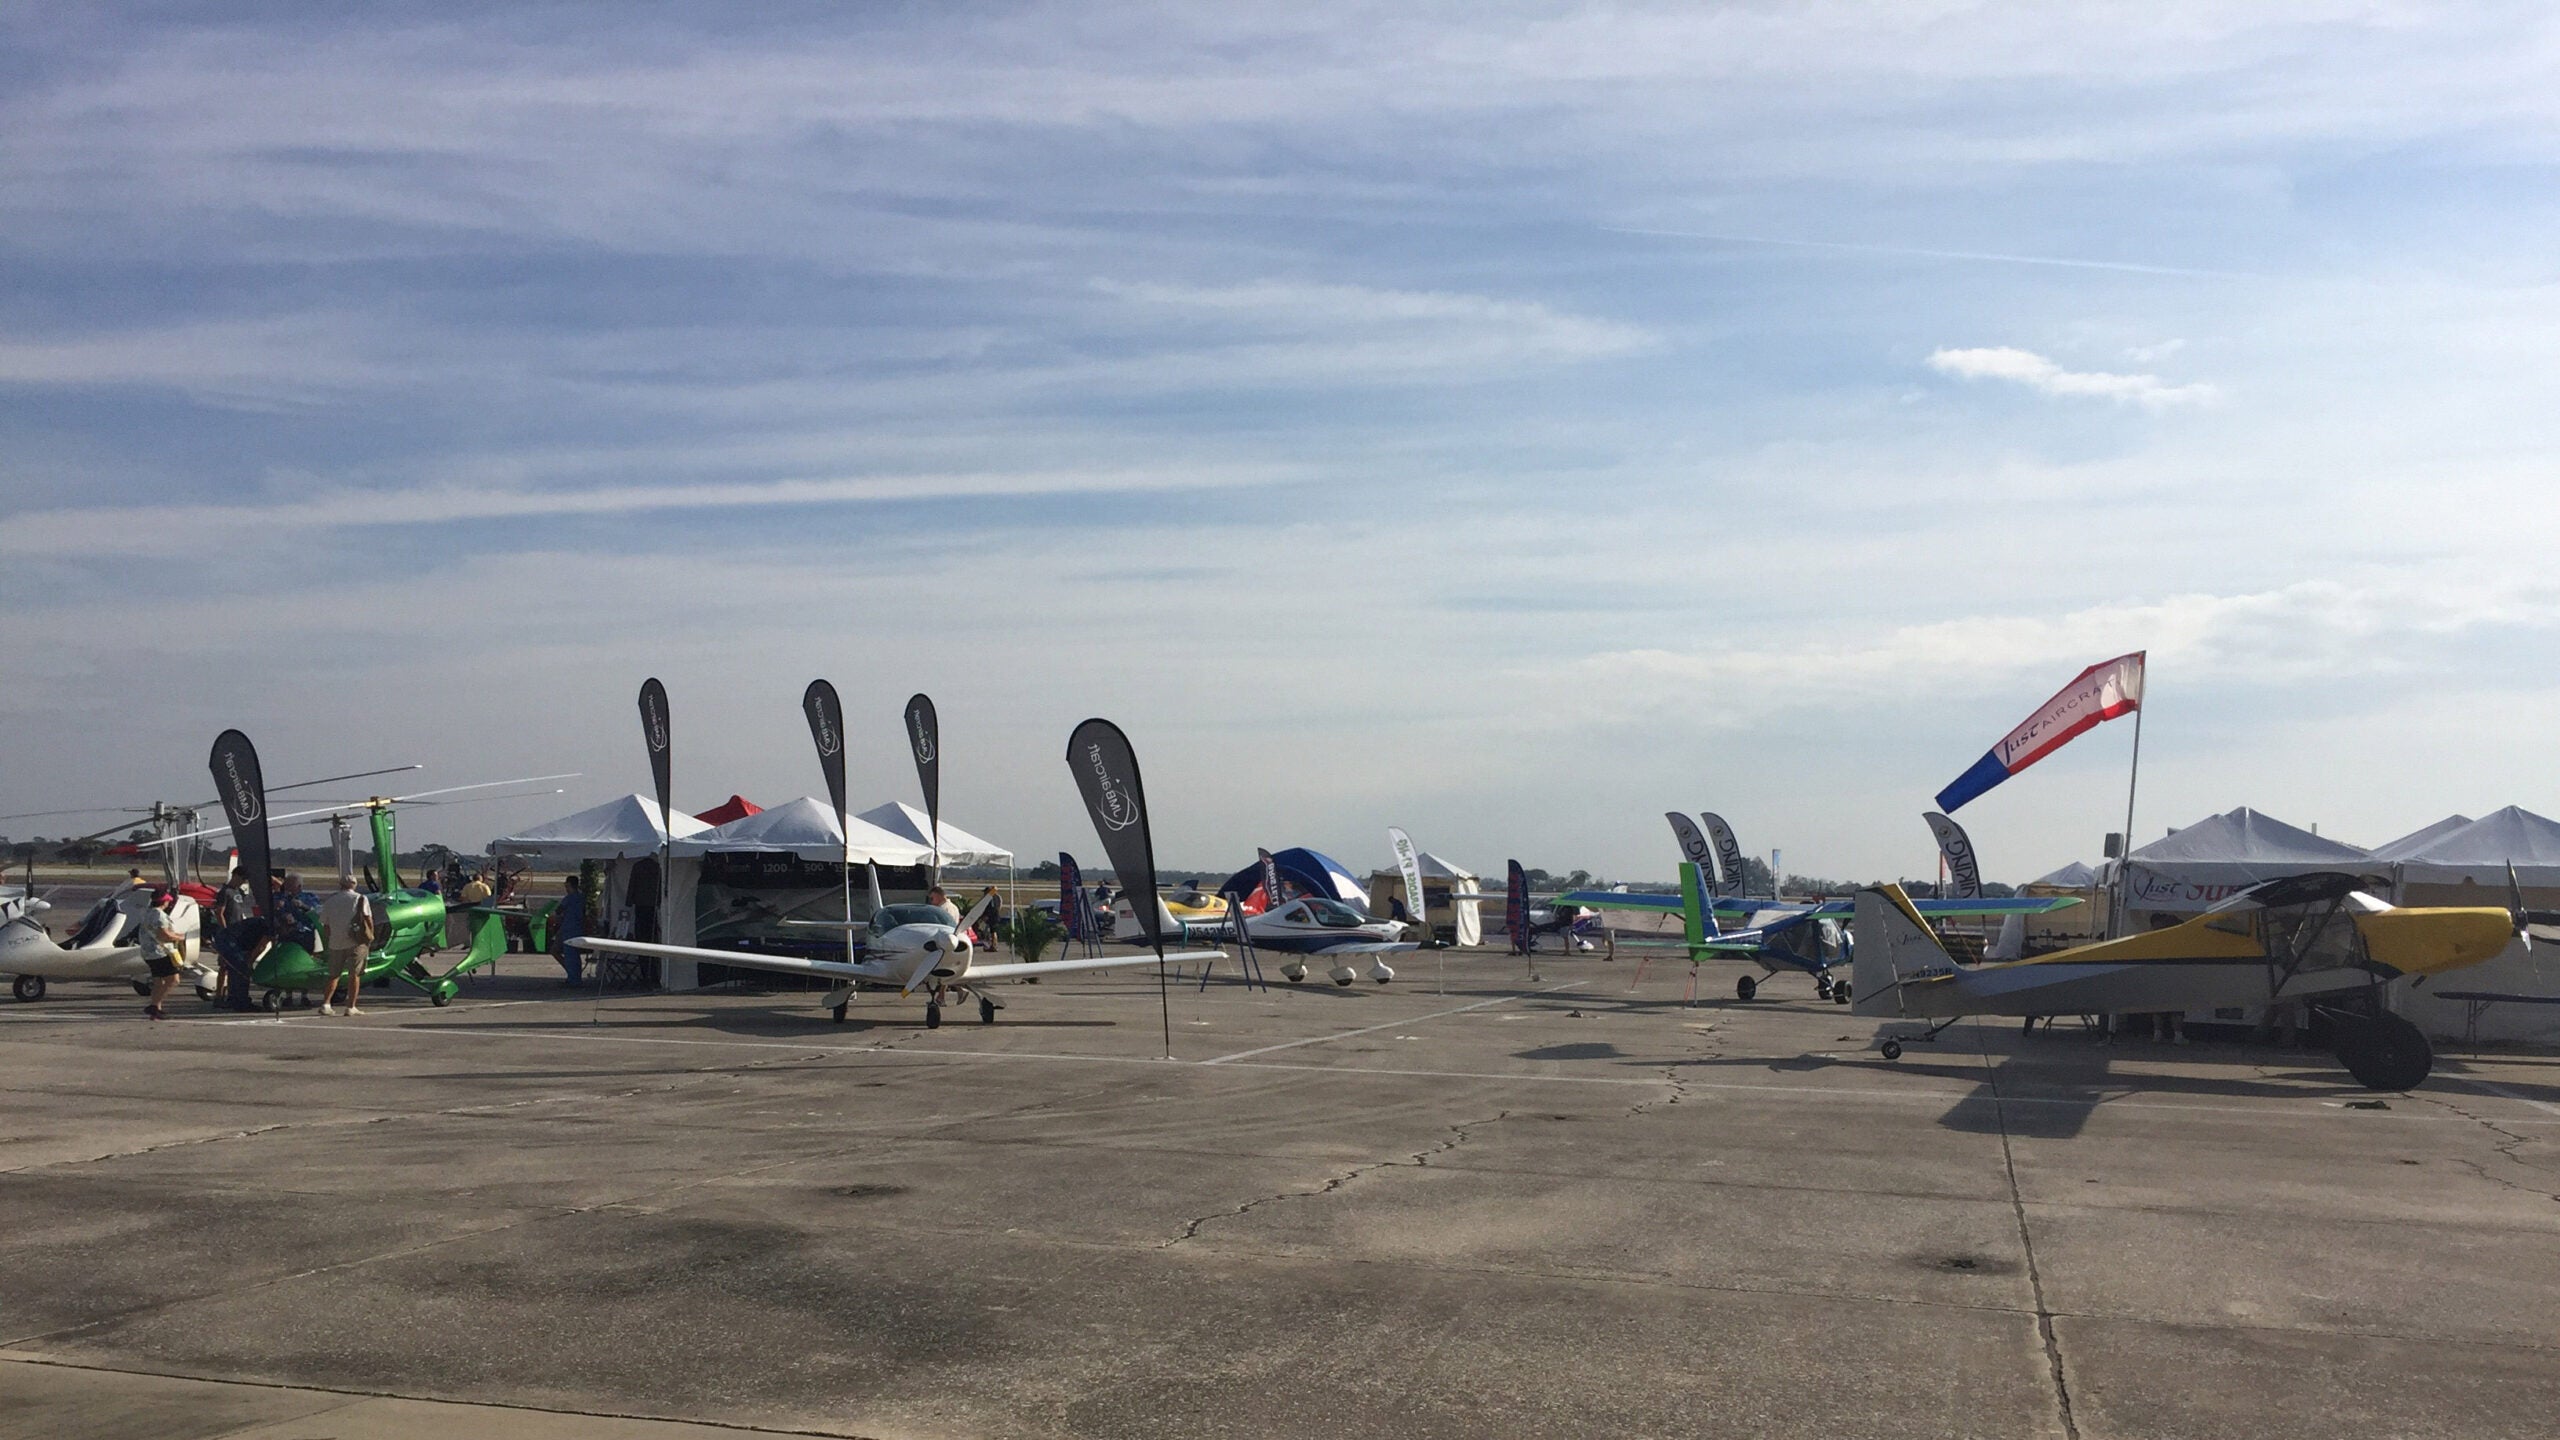 Sebring Sport Aviation Expo Kicks Off